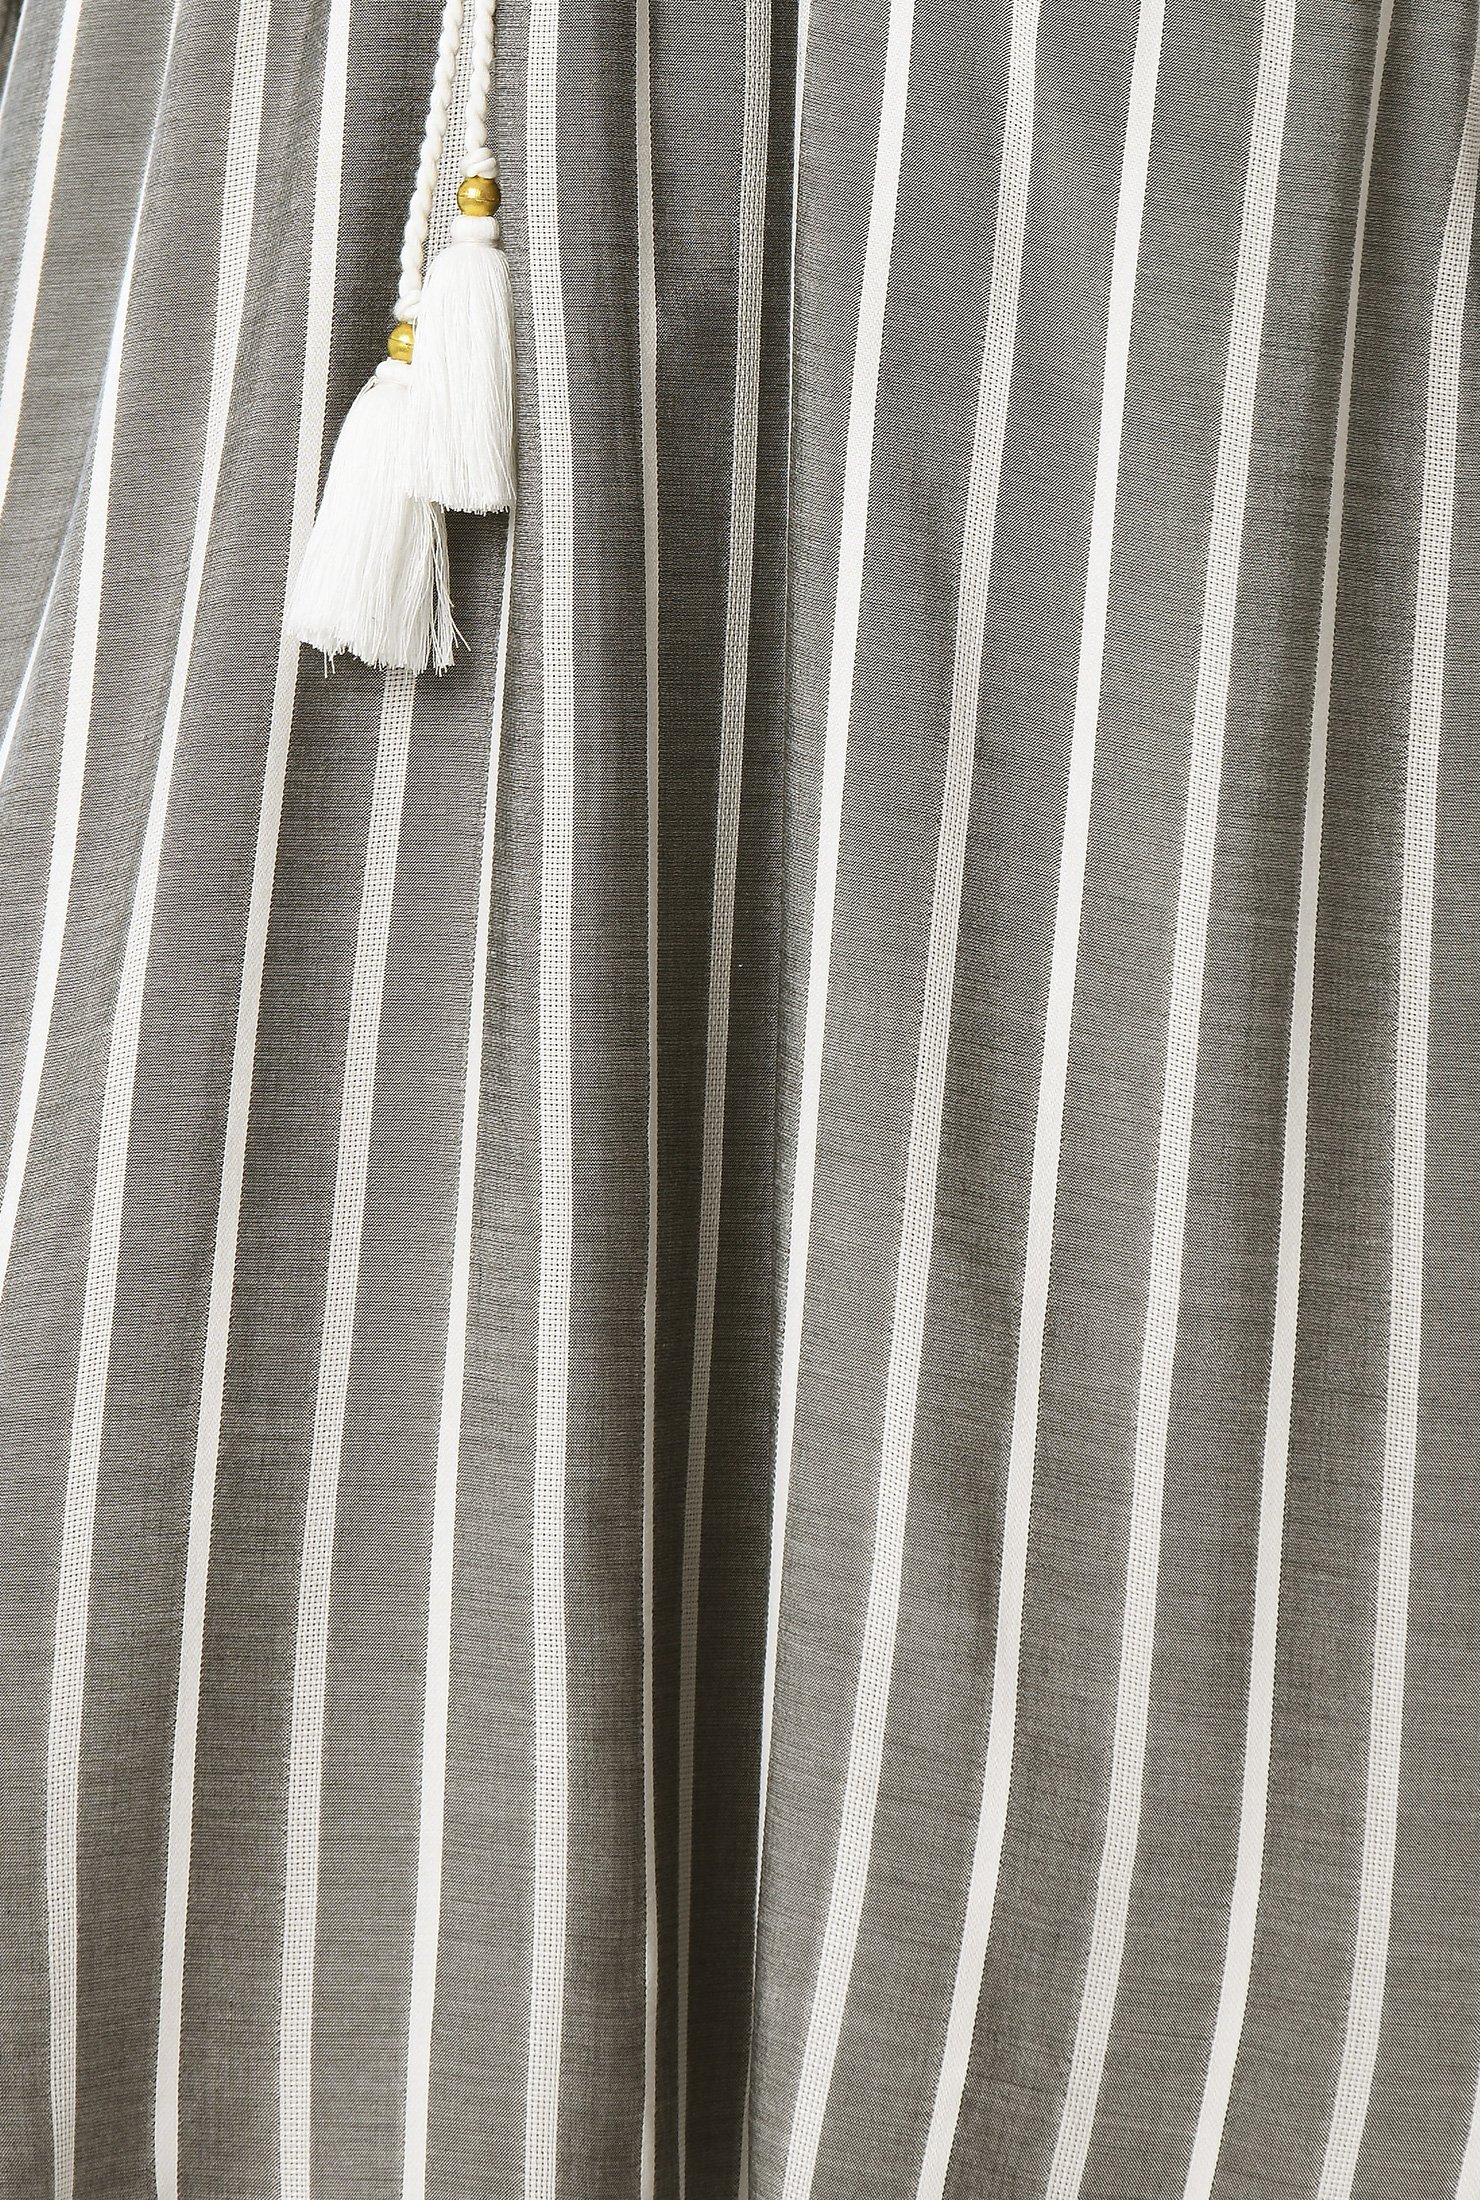 Shop Stripe cotton chambray drawstring tassel tie dress | eShakti